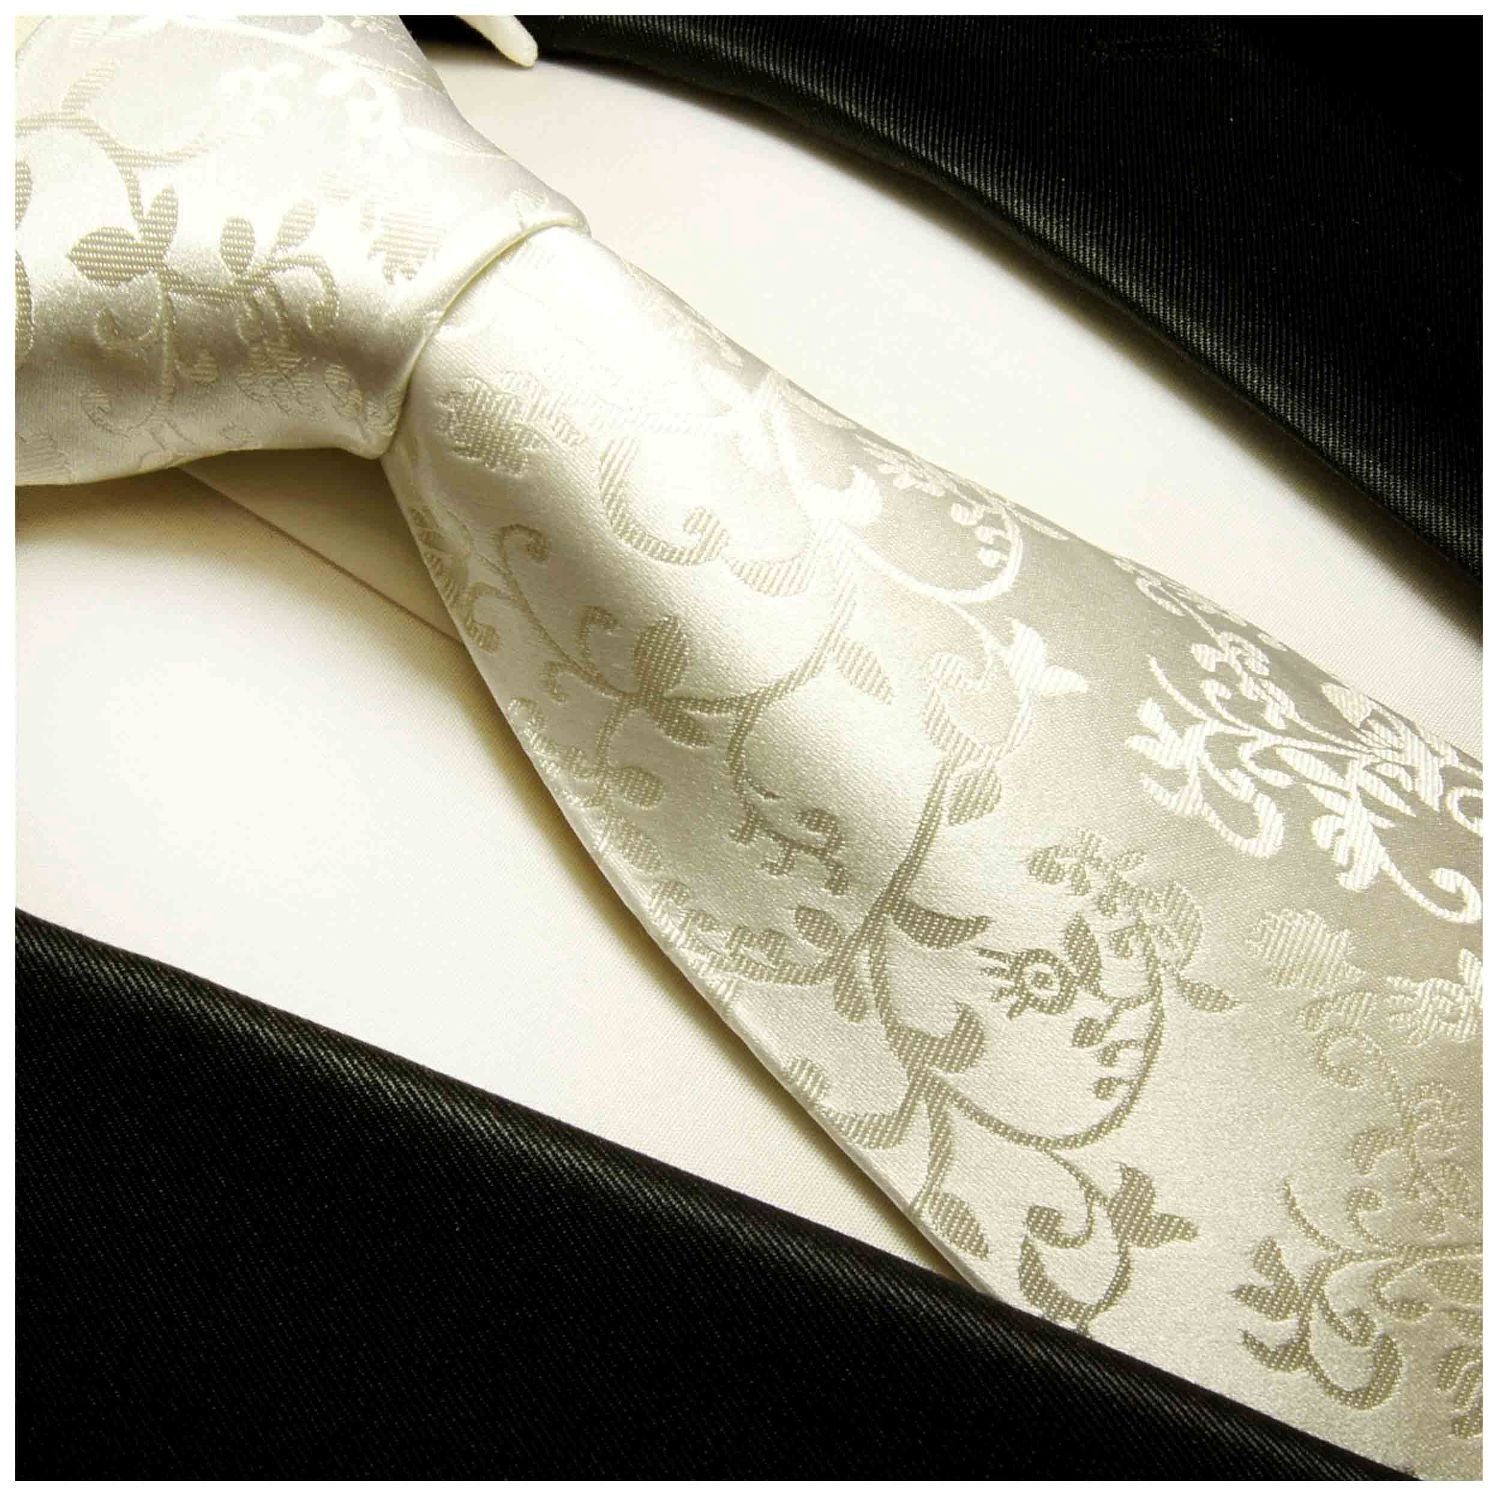 Paul Malone floral Krawatte ivory Hochzeit Bräutigam Schmal Seide 930 (6cm), Hochzeitskrawatte Herren 100% Schlips